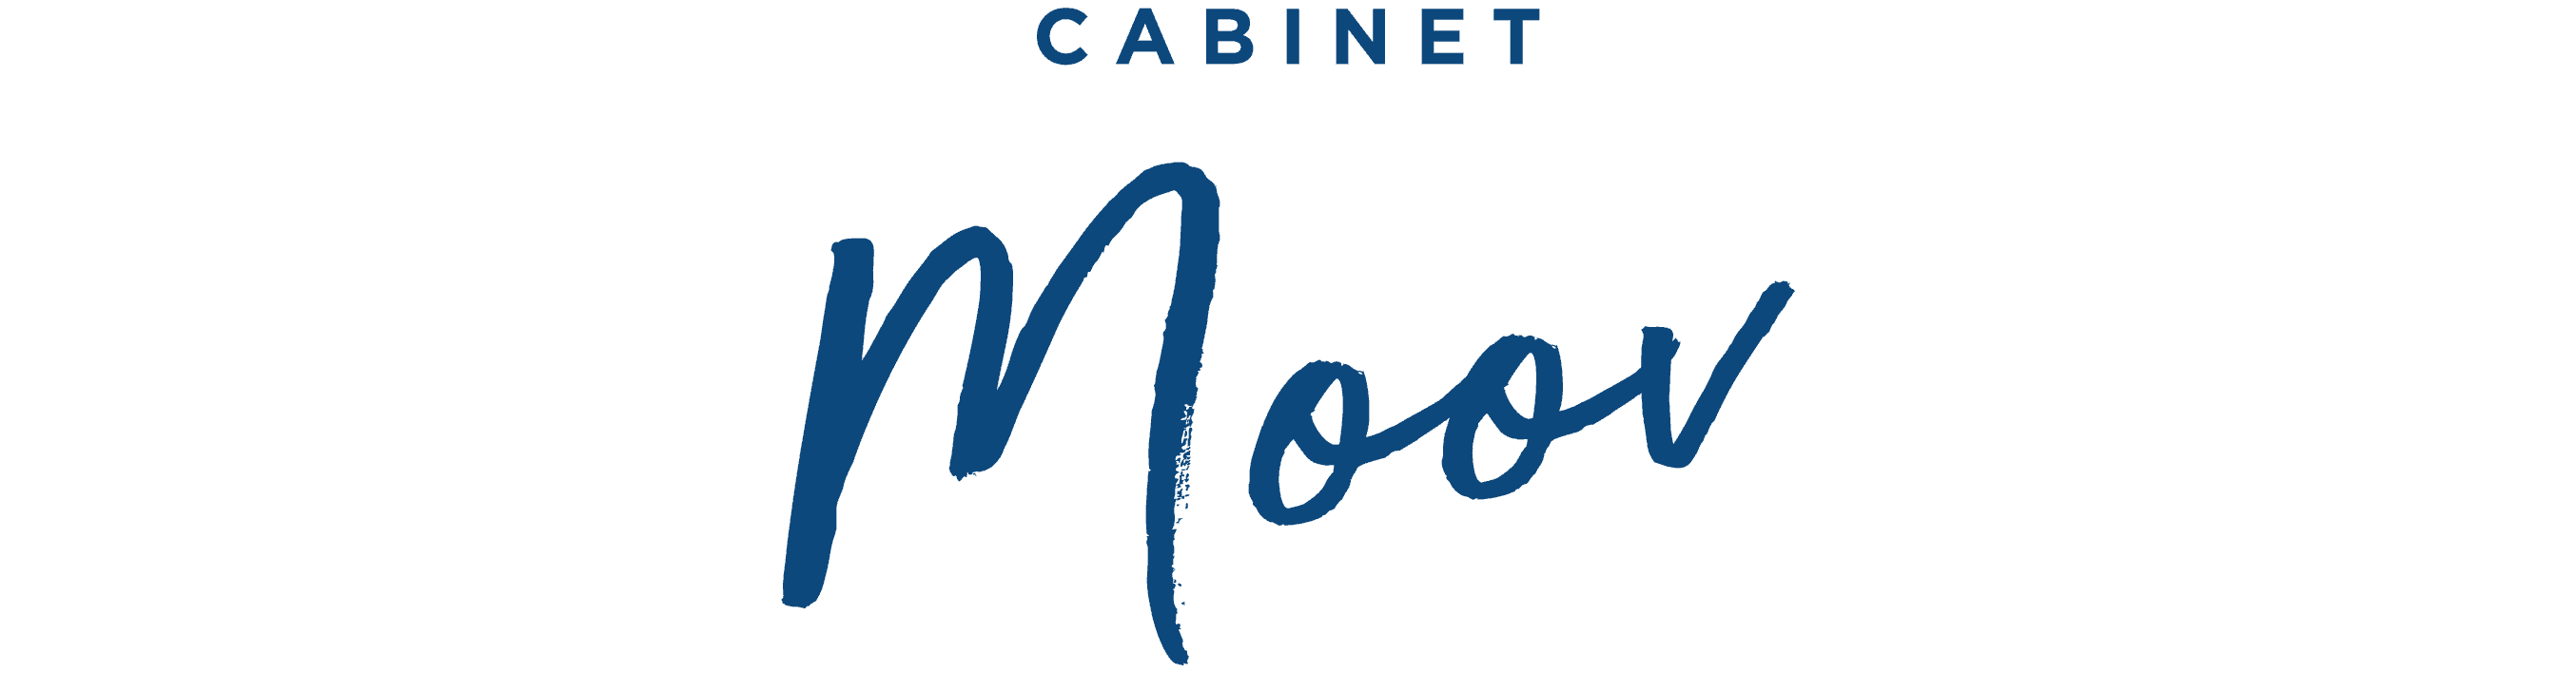 logo de Cabinet MOOV